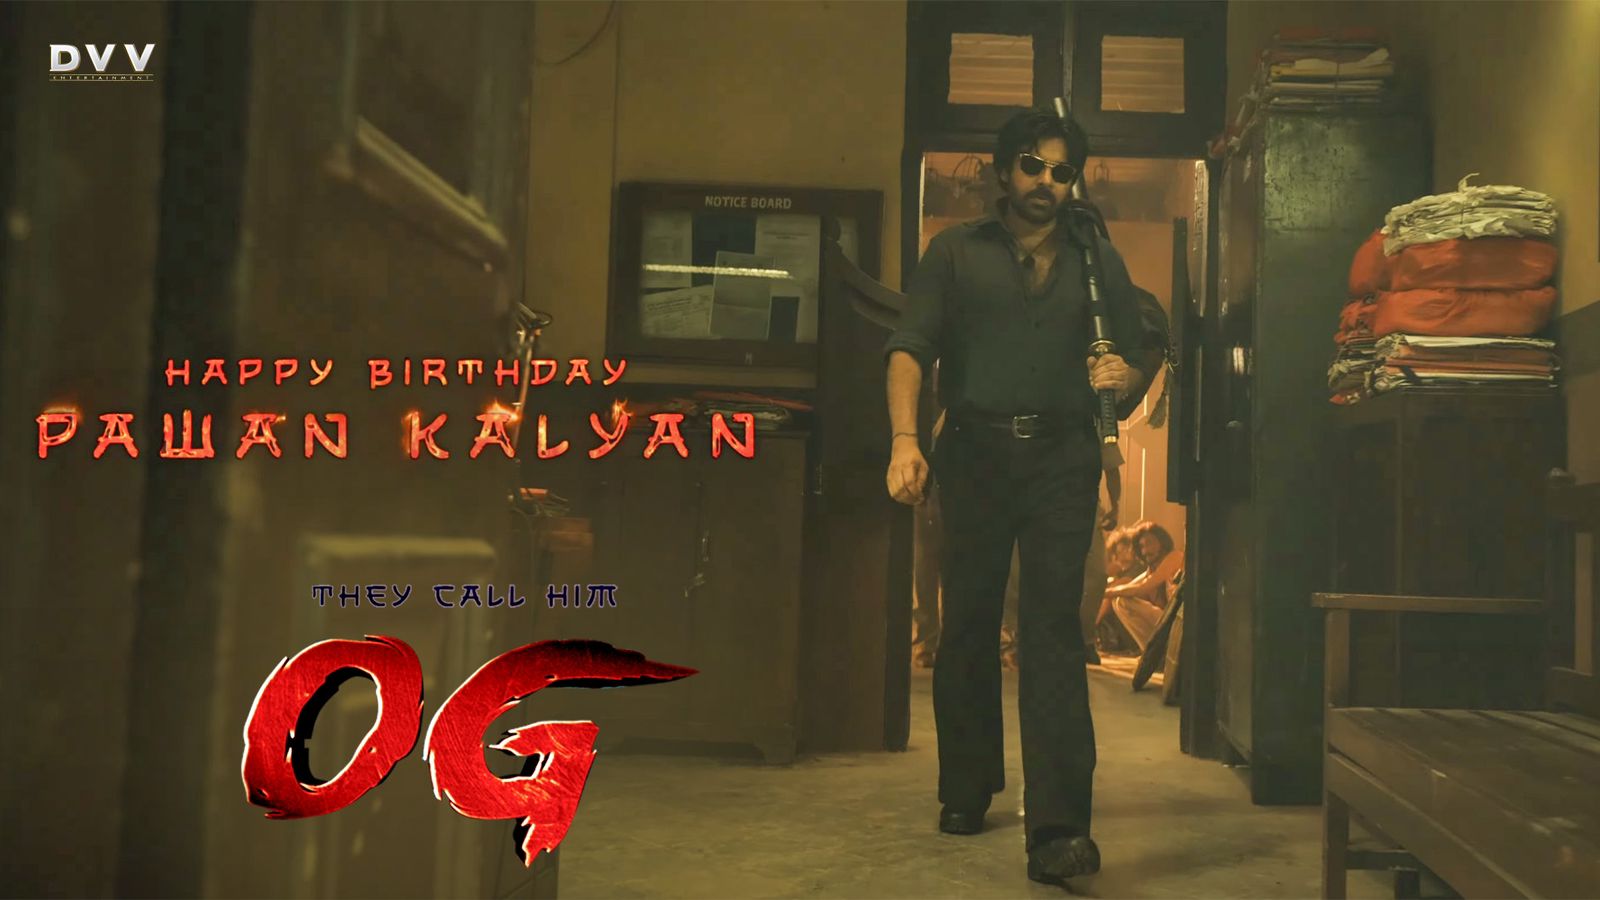 On Pawan Kalyan’s birthday, makers of ‘OG’ drop the long-awaited teaser!